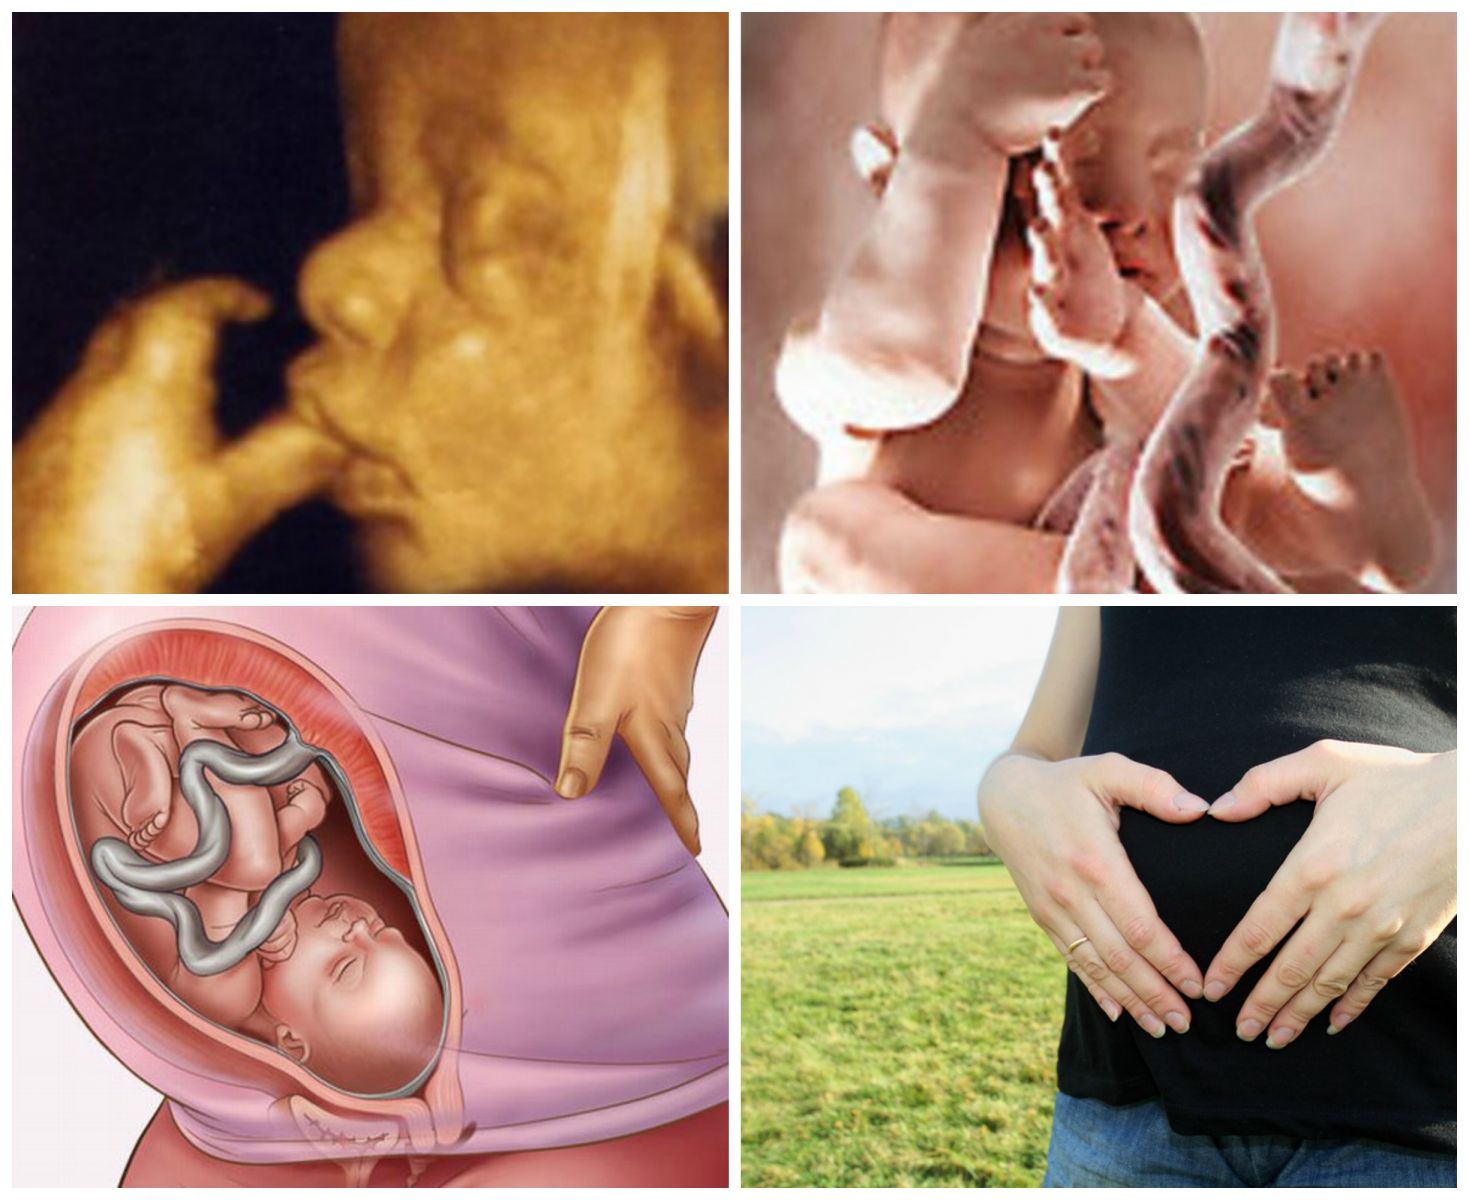 35 неделя беременности. календарь беременности   | материнство - беременность, роды, питание, воспитание